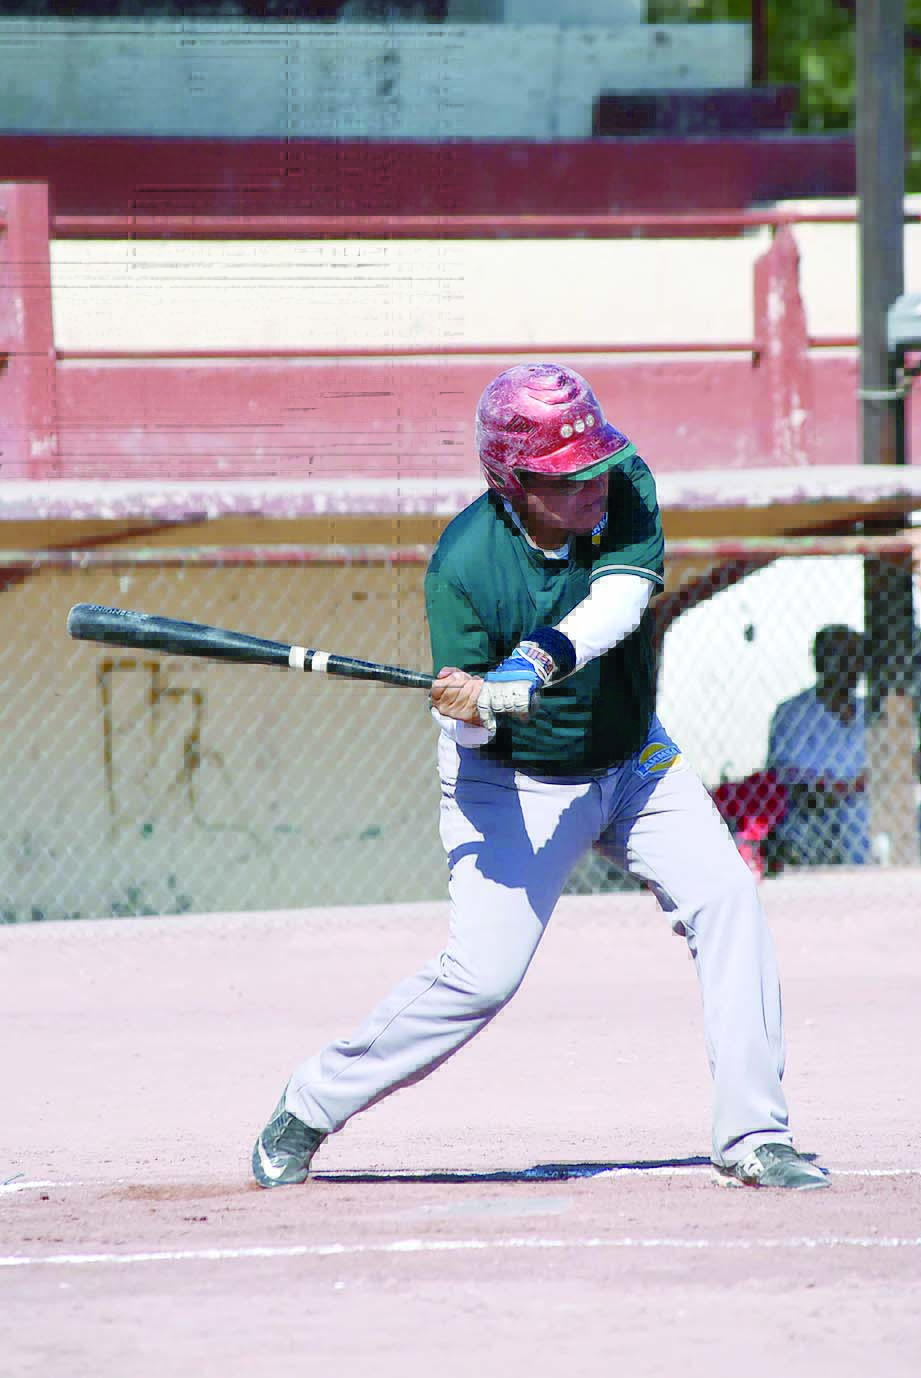 Orioles, en el béisbol Mayor, inicia con el pie derecho